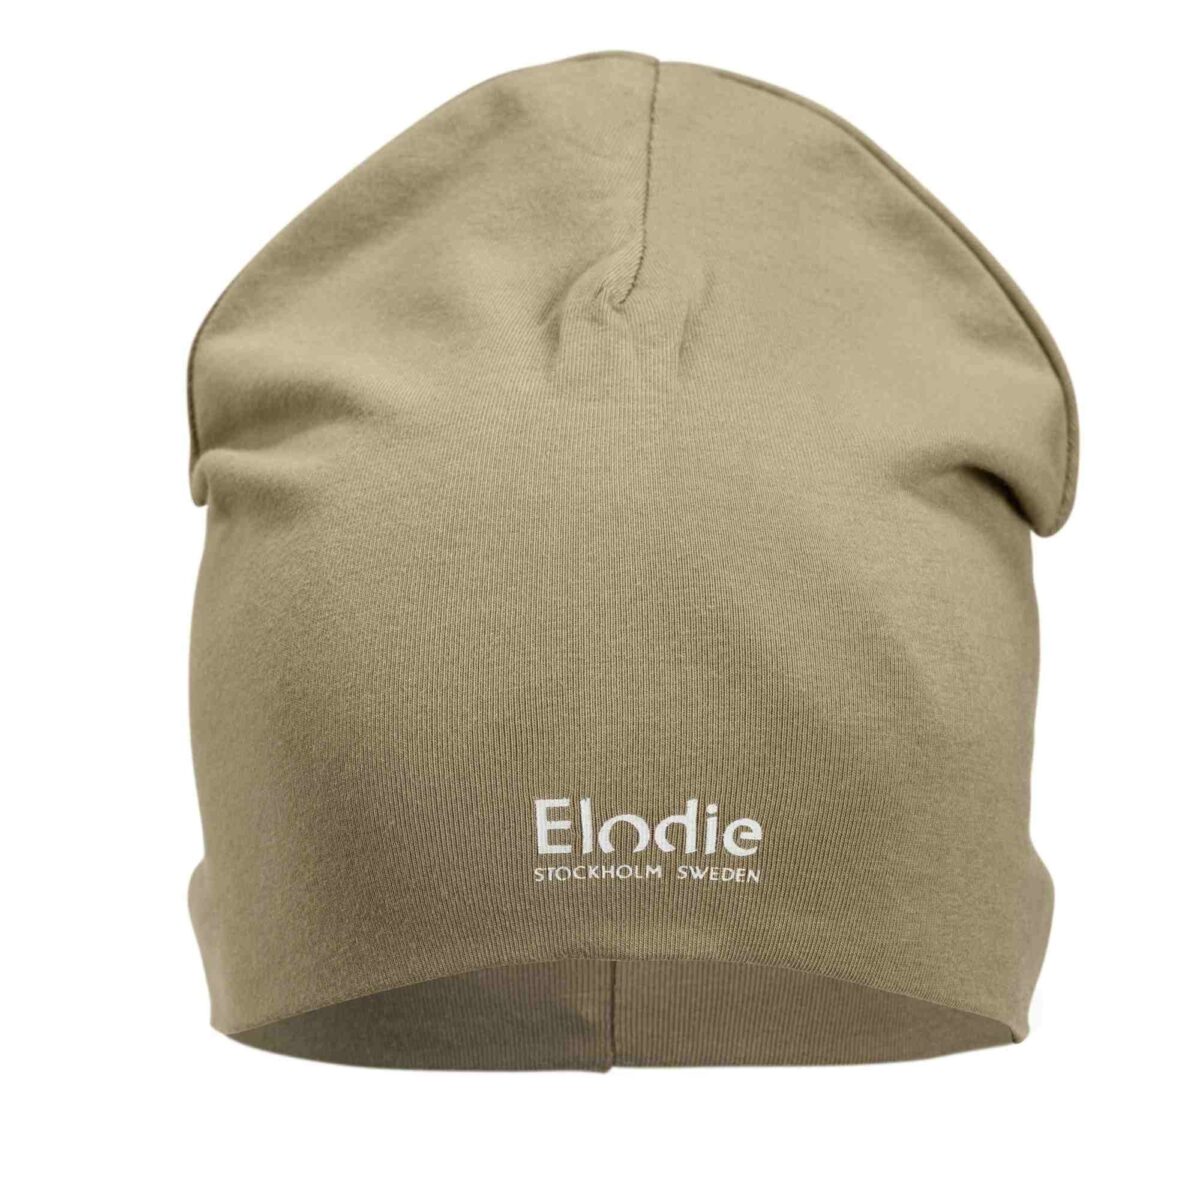 Elodie Details - Logo Beanie - Warm Sand 6-12 Months - Ubrania I Akcesoria &Gt; Ubrania &Gt; Ubrania Dla Dzieci I Niemowląt